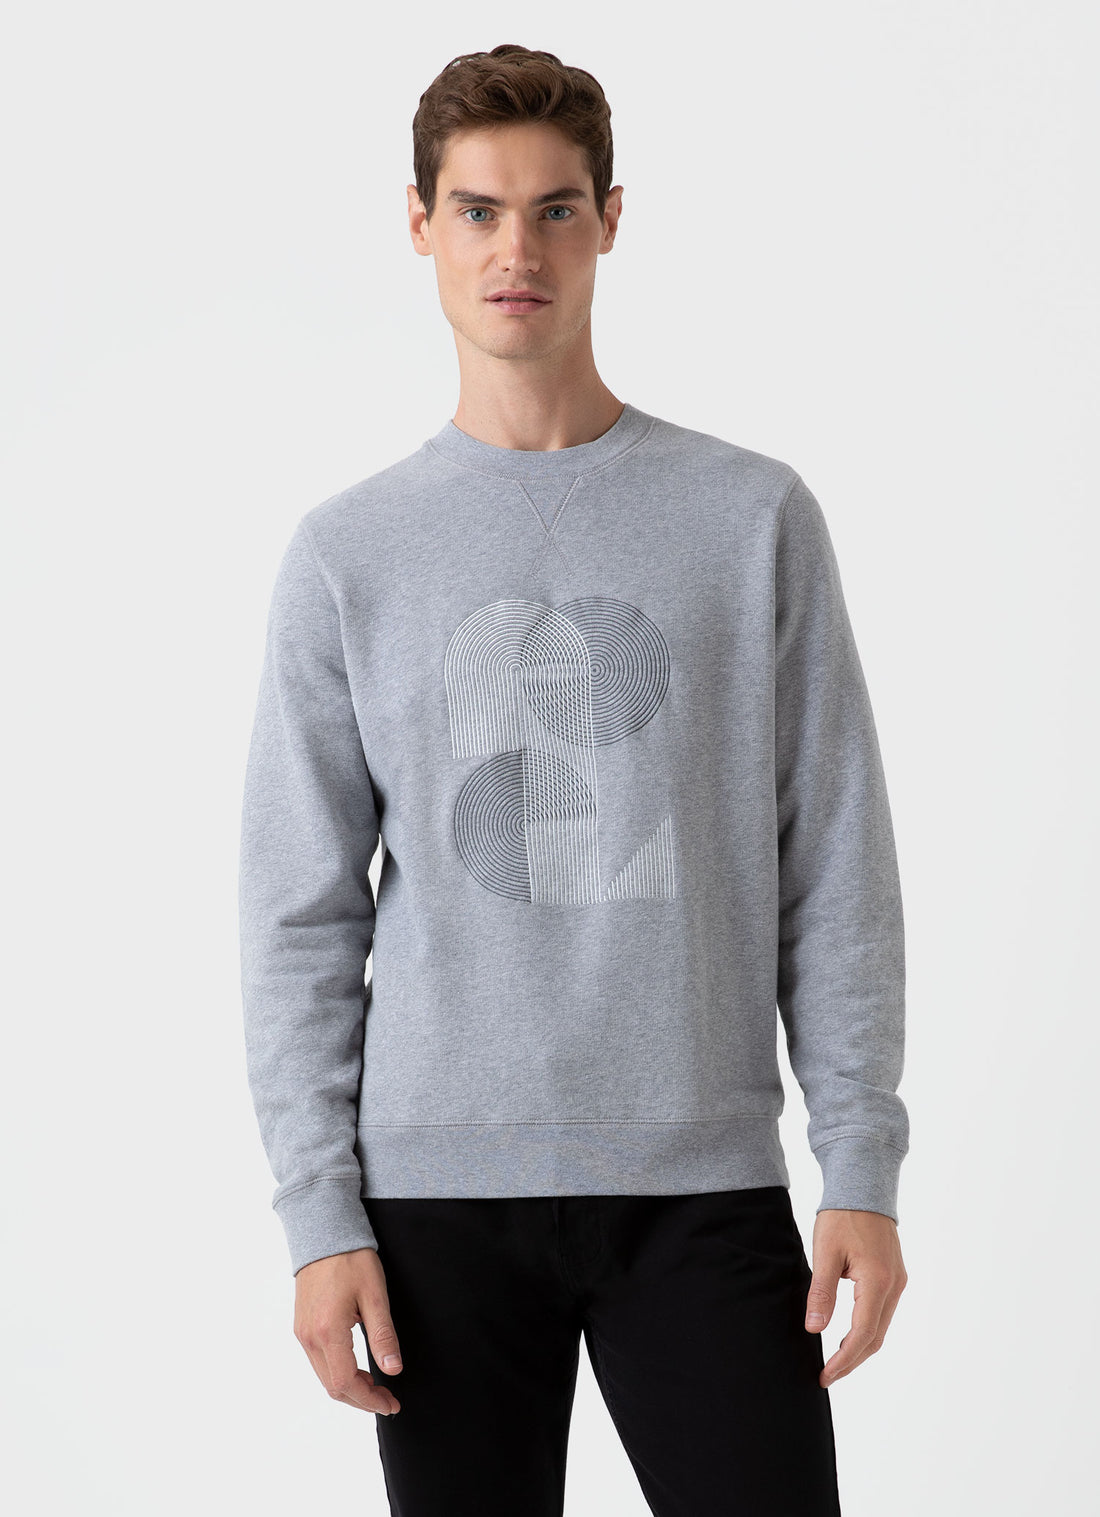 Men's Craig Ward Embroidered Sweatshirt in Grey Melange